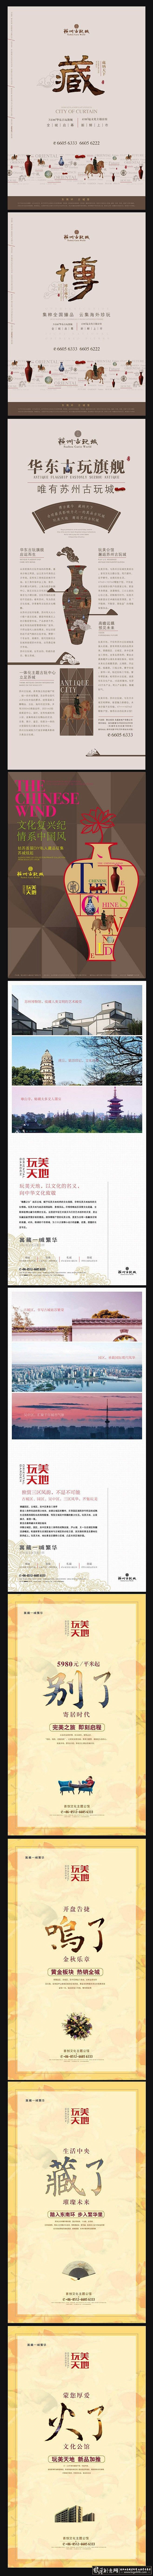 中国风 中国风-房地产广告设计 中国传统...